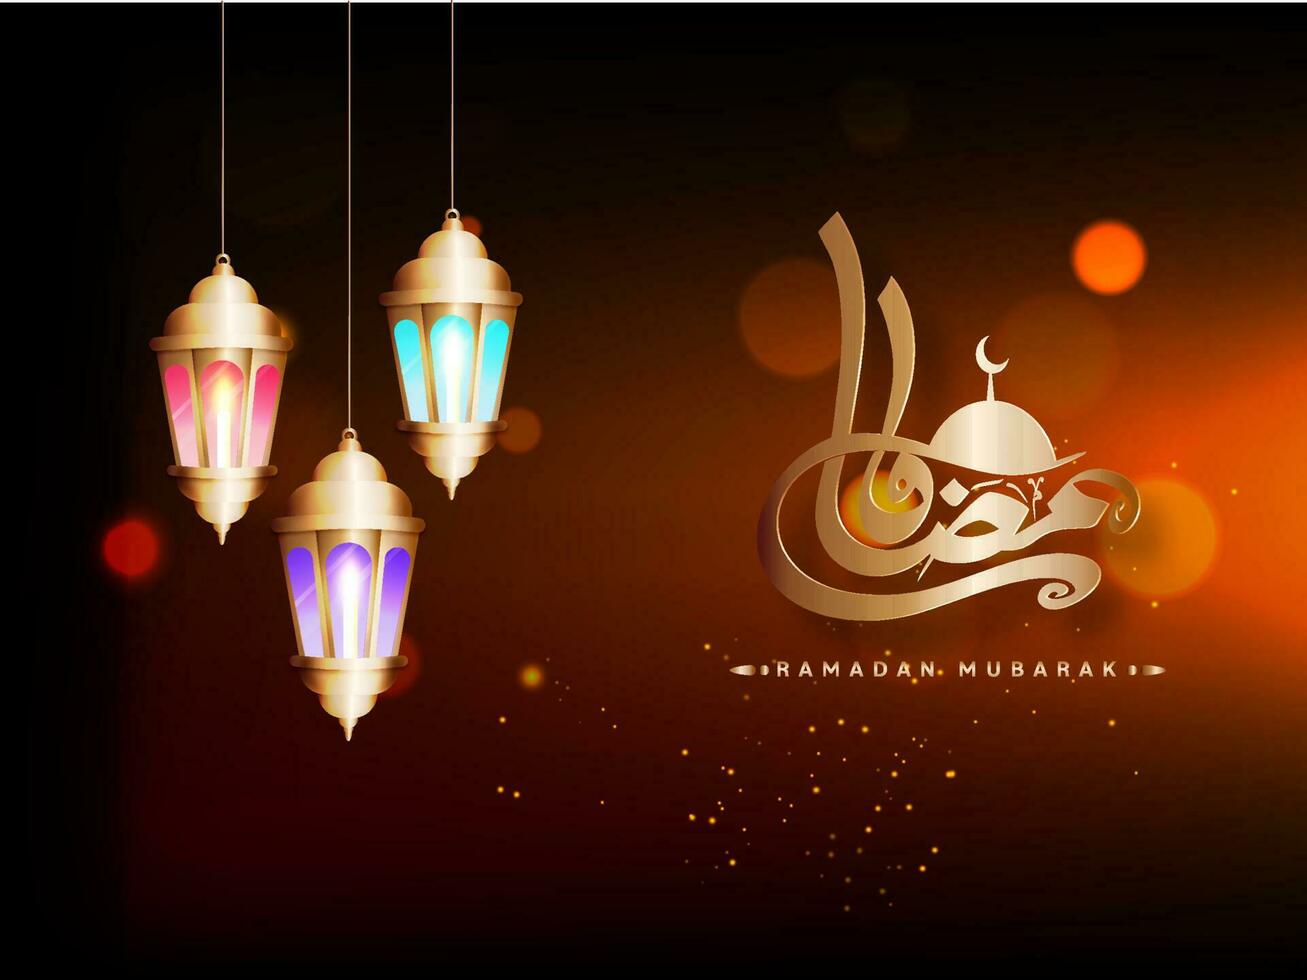 golden Arabisch Kalligraphie von Ramadan Mubarak mit Moschee und zündete Laternen hängen auf braun Licht bewirken Hintergrund. vektor